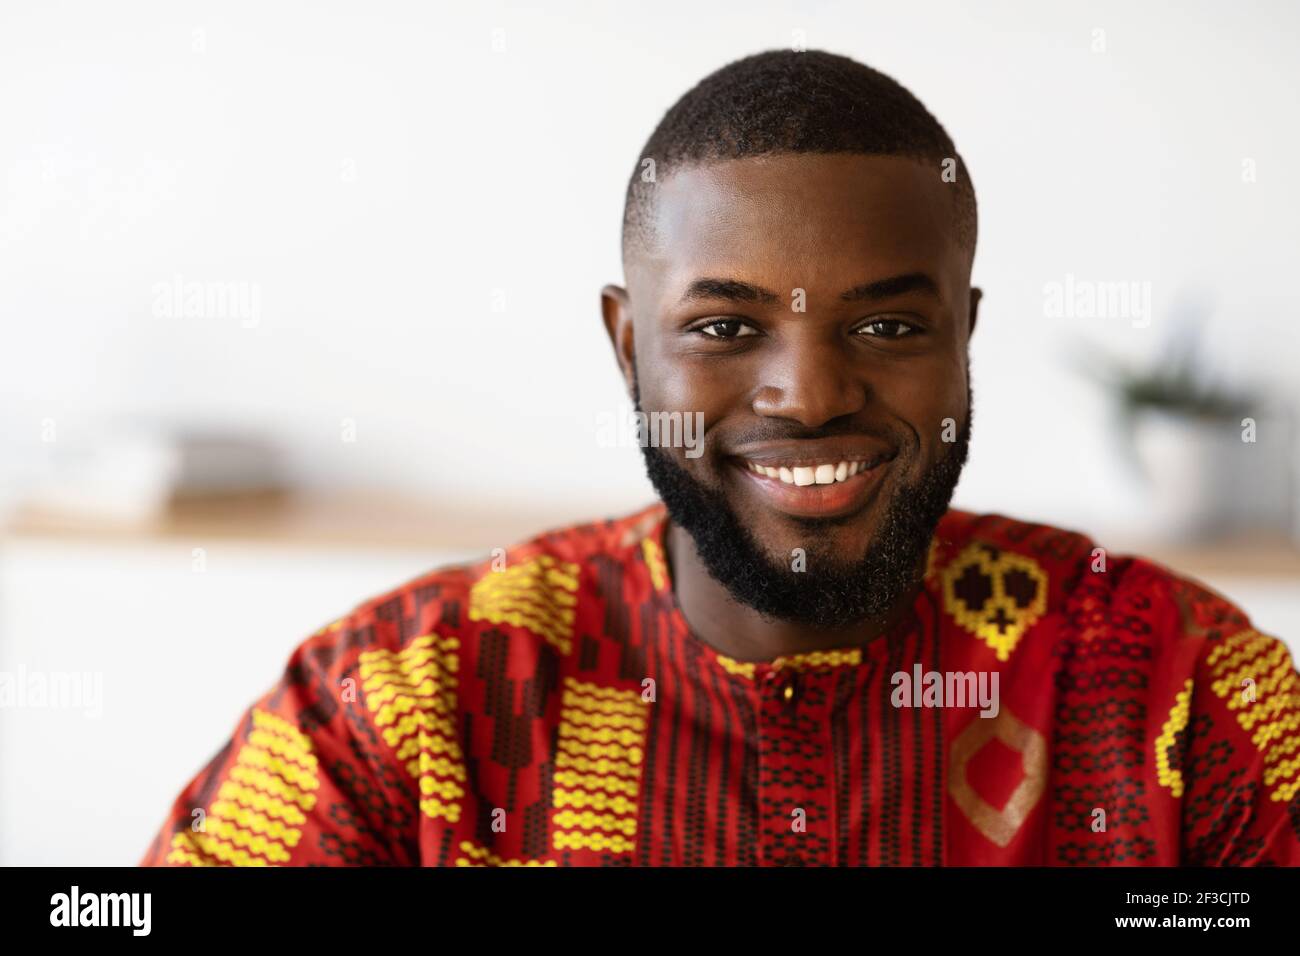 Nahaufnahme Porträt von schönen positiven schwarzen Mann in traditionellen afrikanischen Kostüm Stockfoto